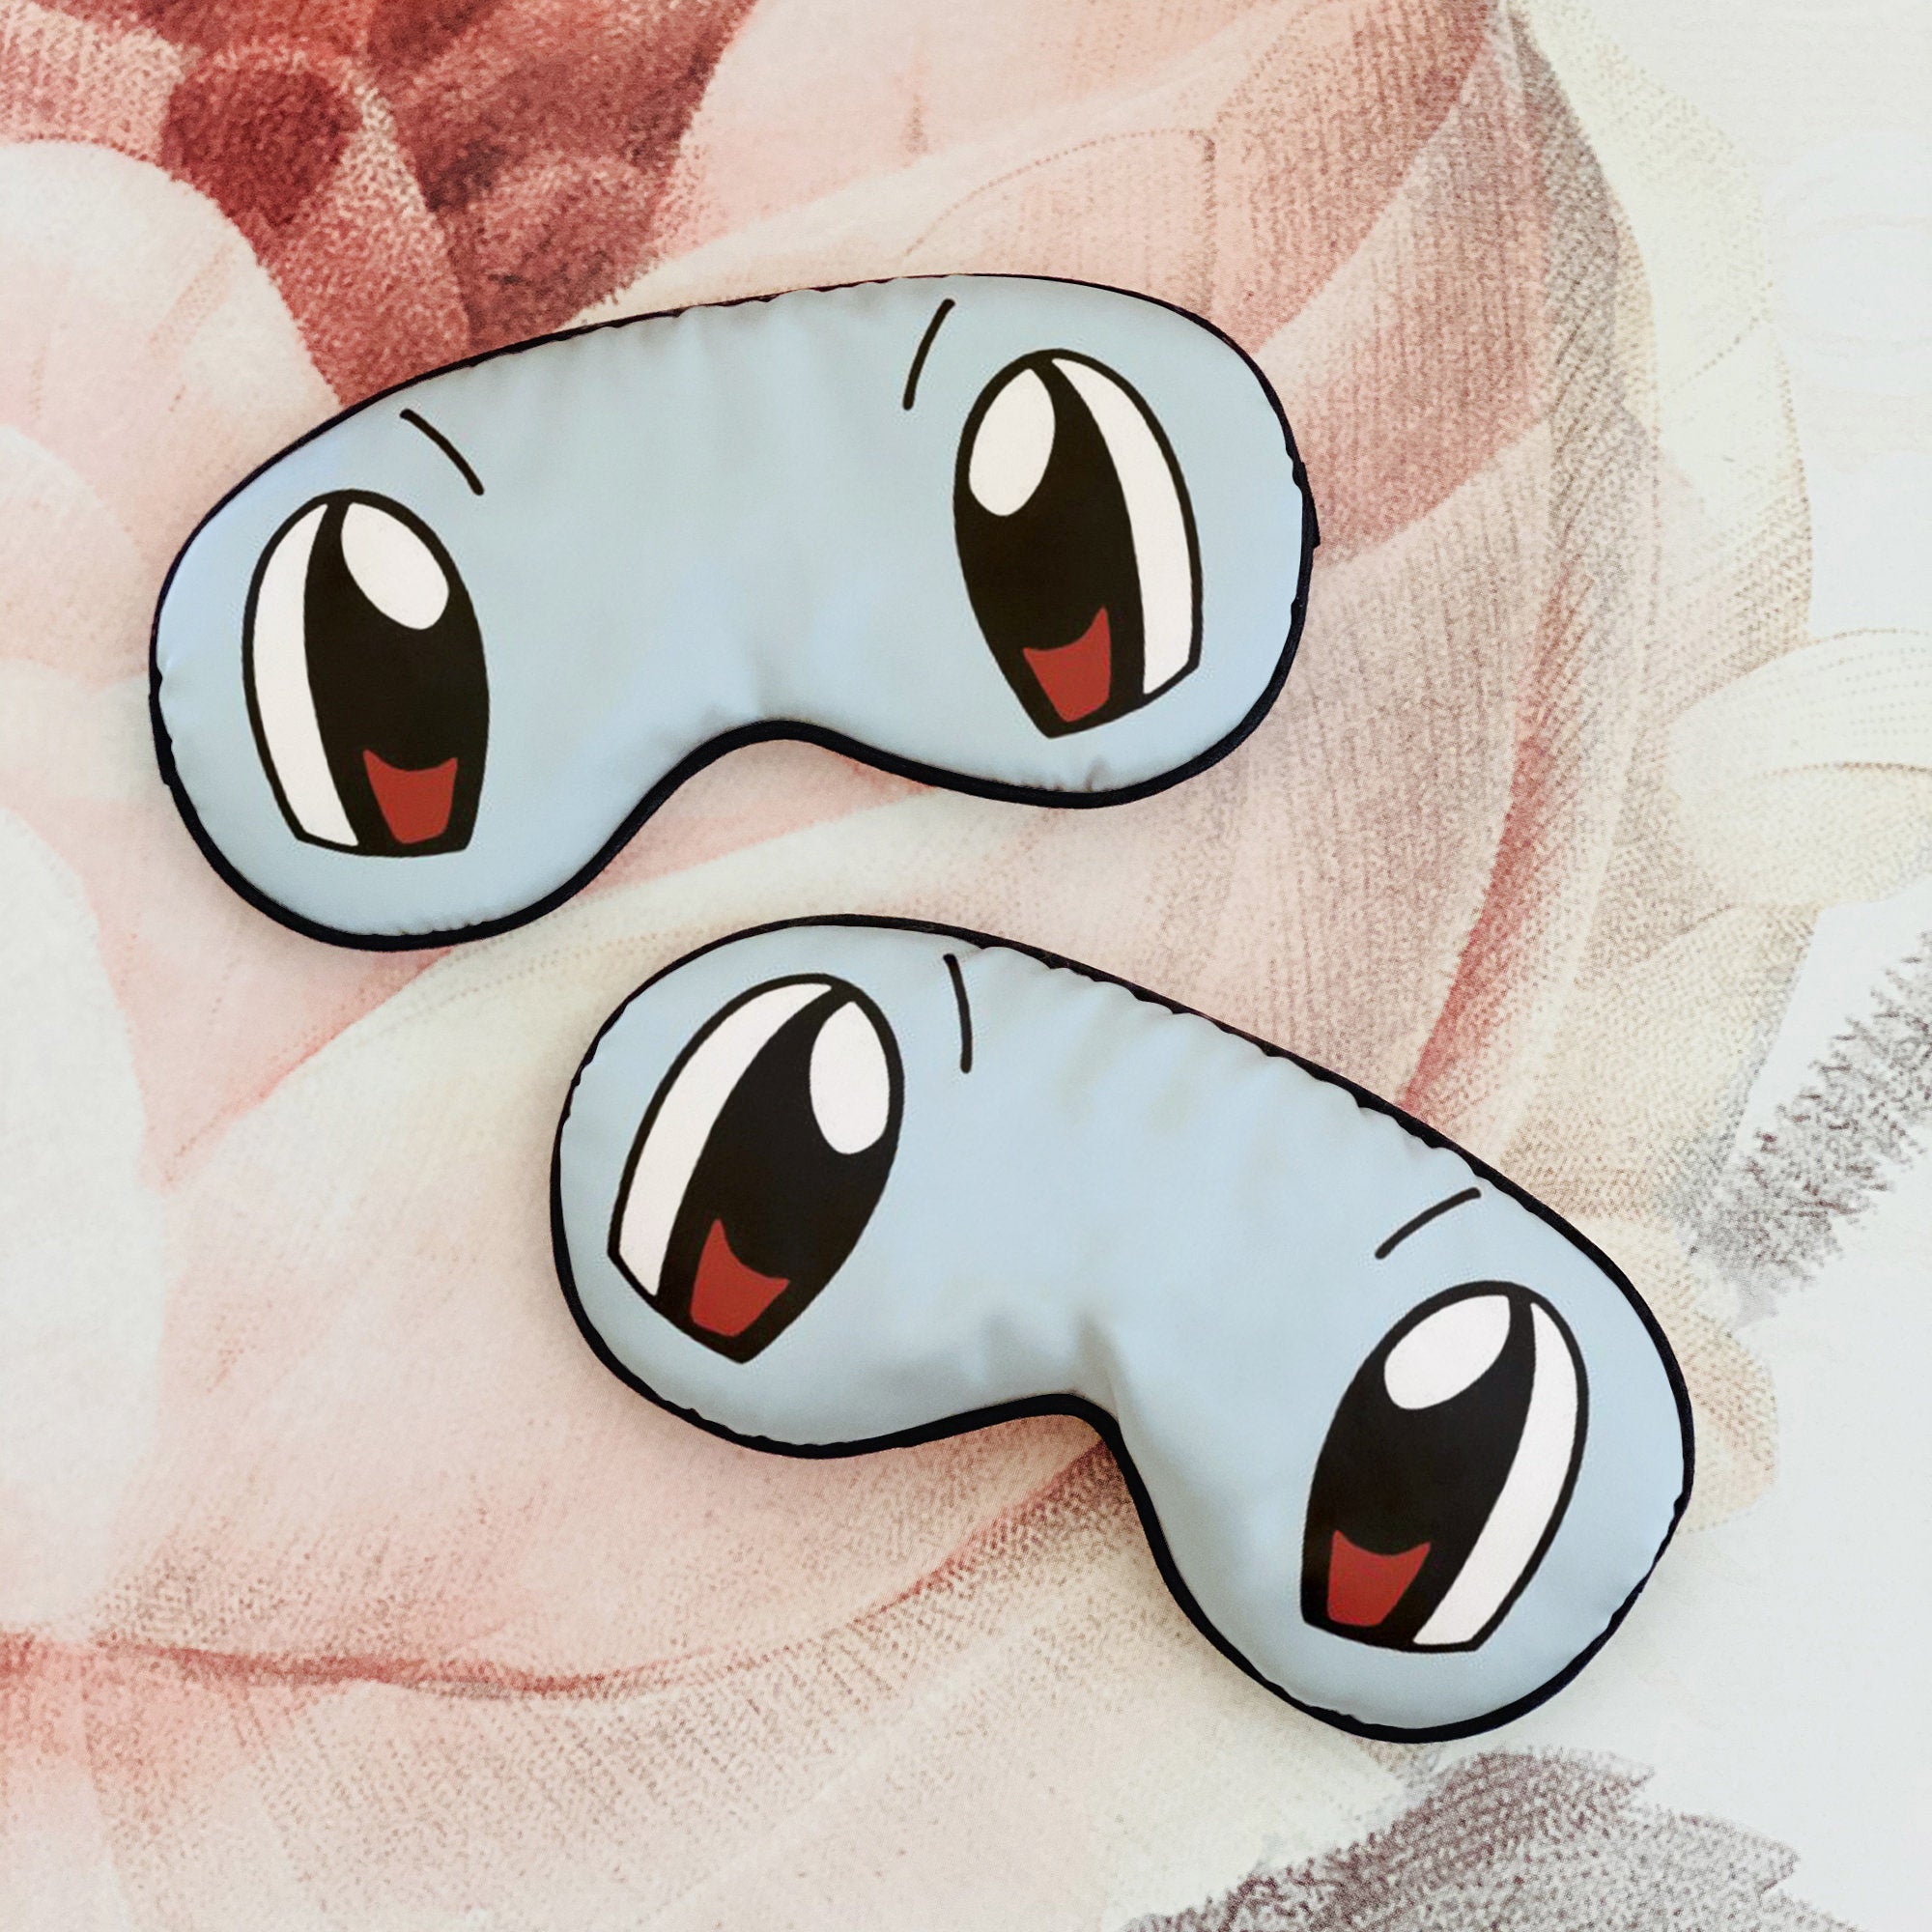 Squirtle from Pokemon Custom Sleep Mask